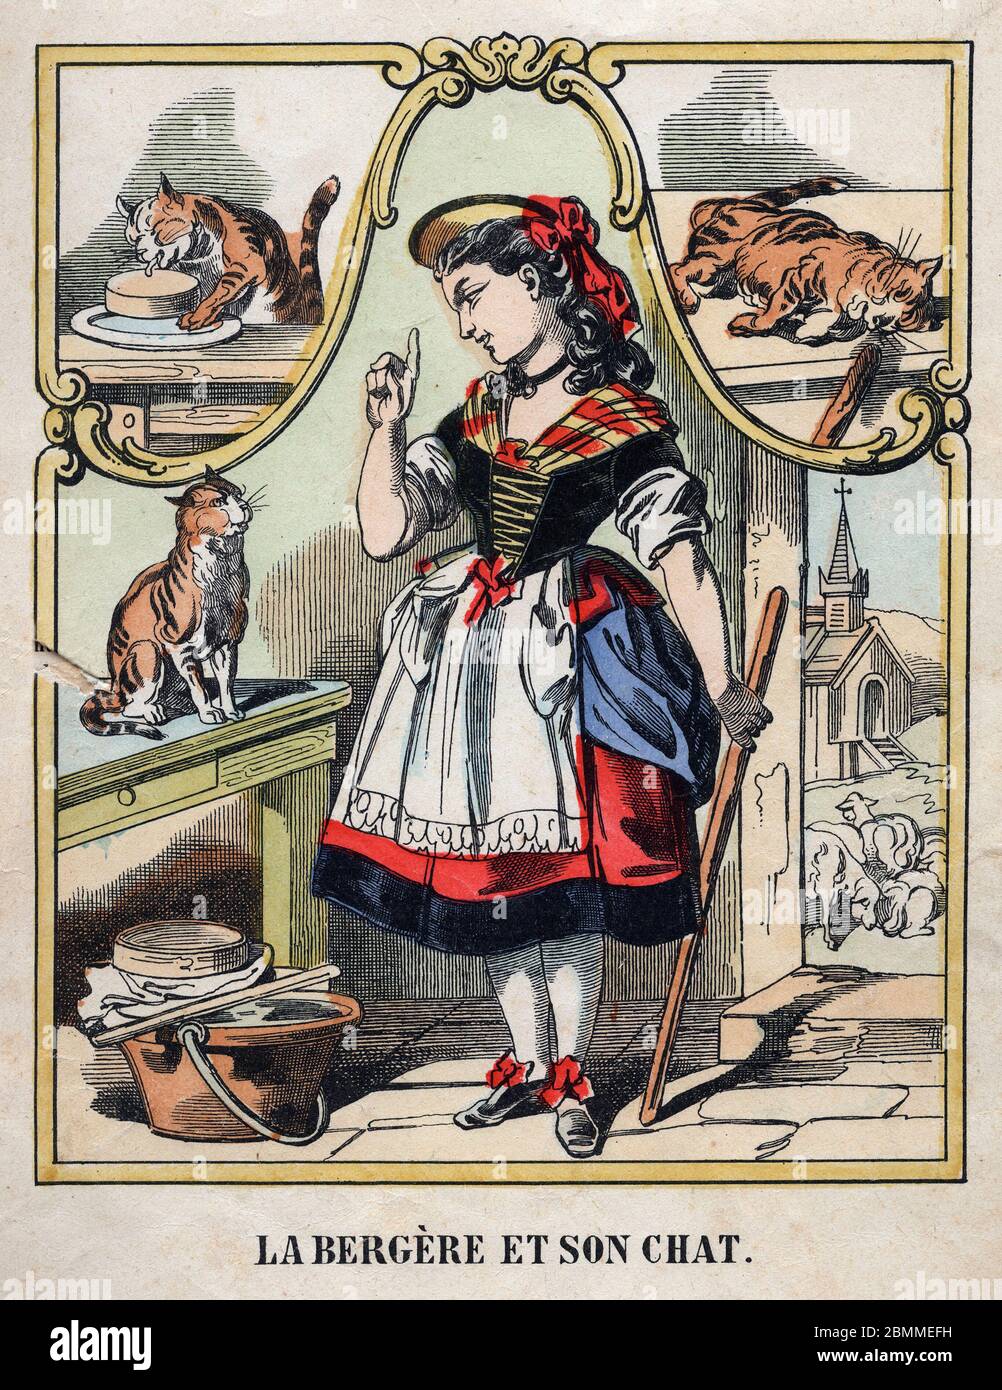 Illustration Anonyme de la chanson populaire francaise (comptine pour enfant) 'La bergere et son Chat' representant la jeune bergere mettant en Garde Stockfoto